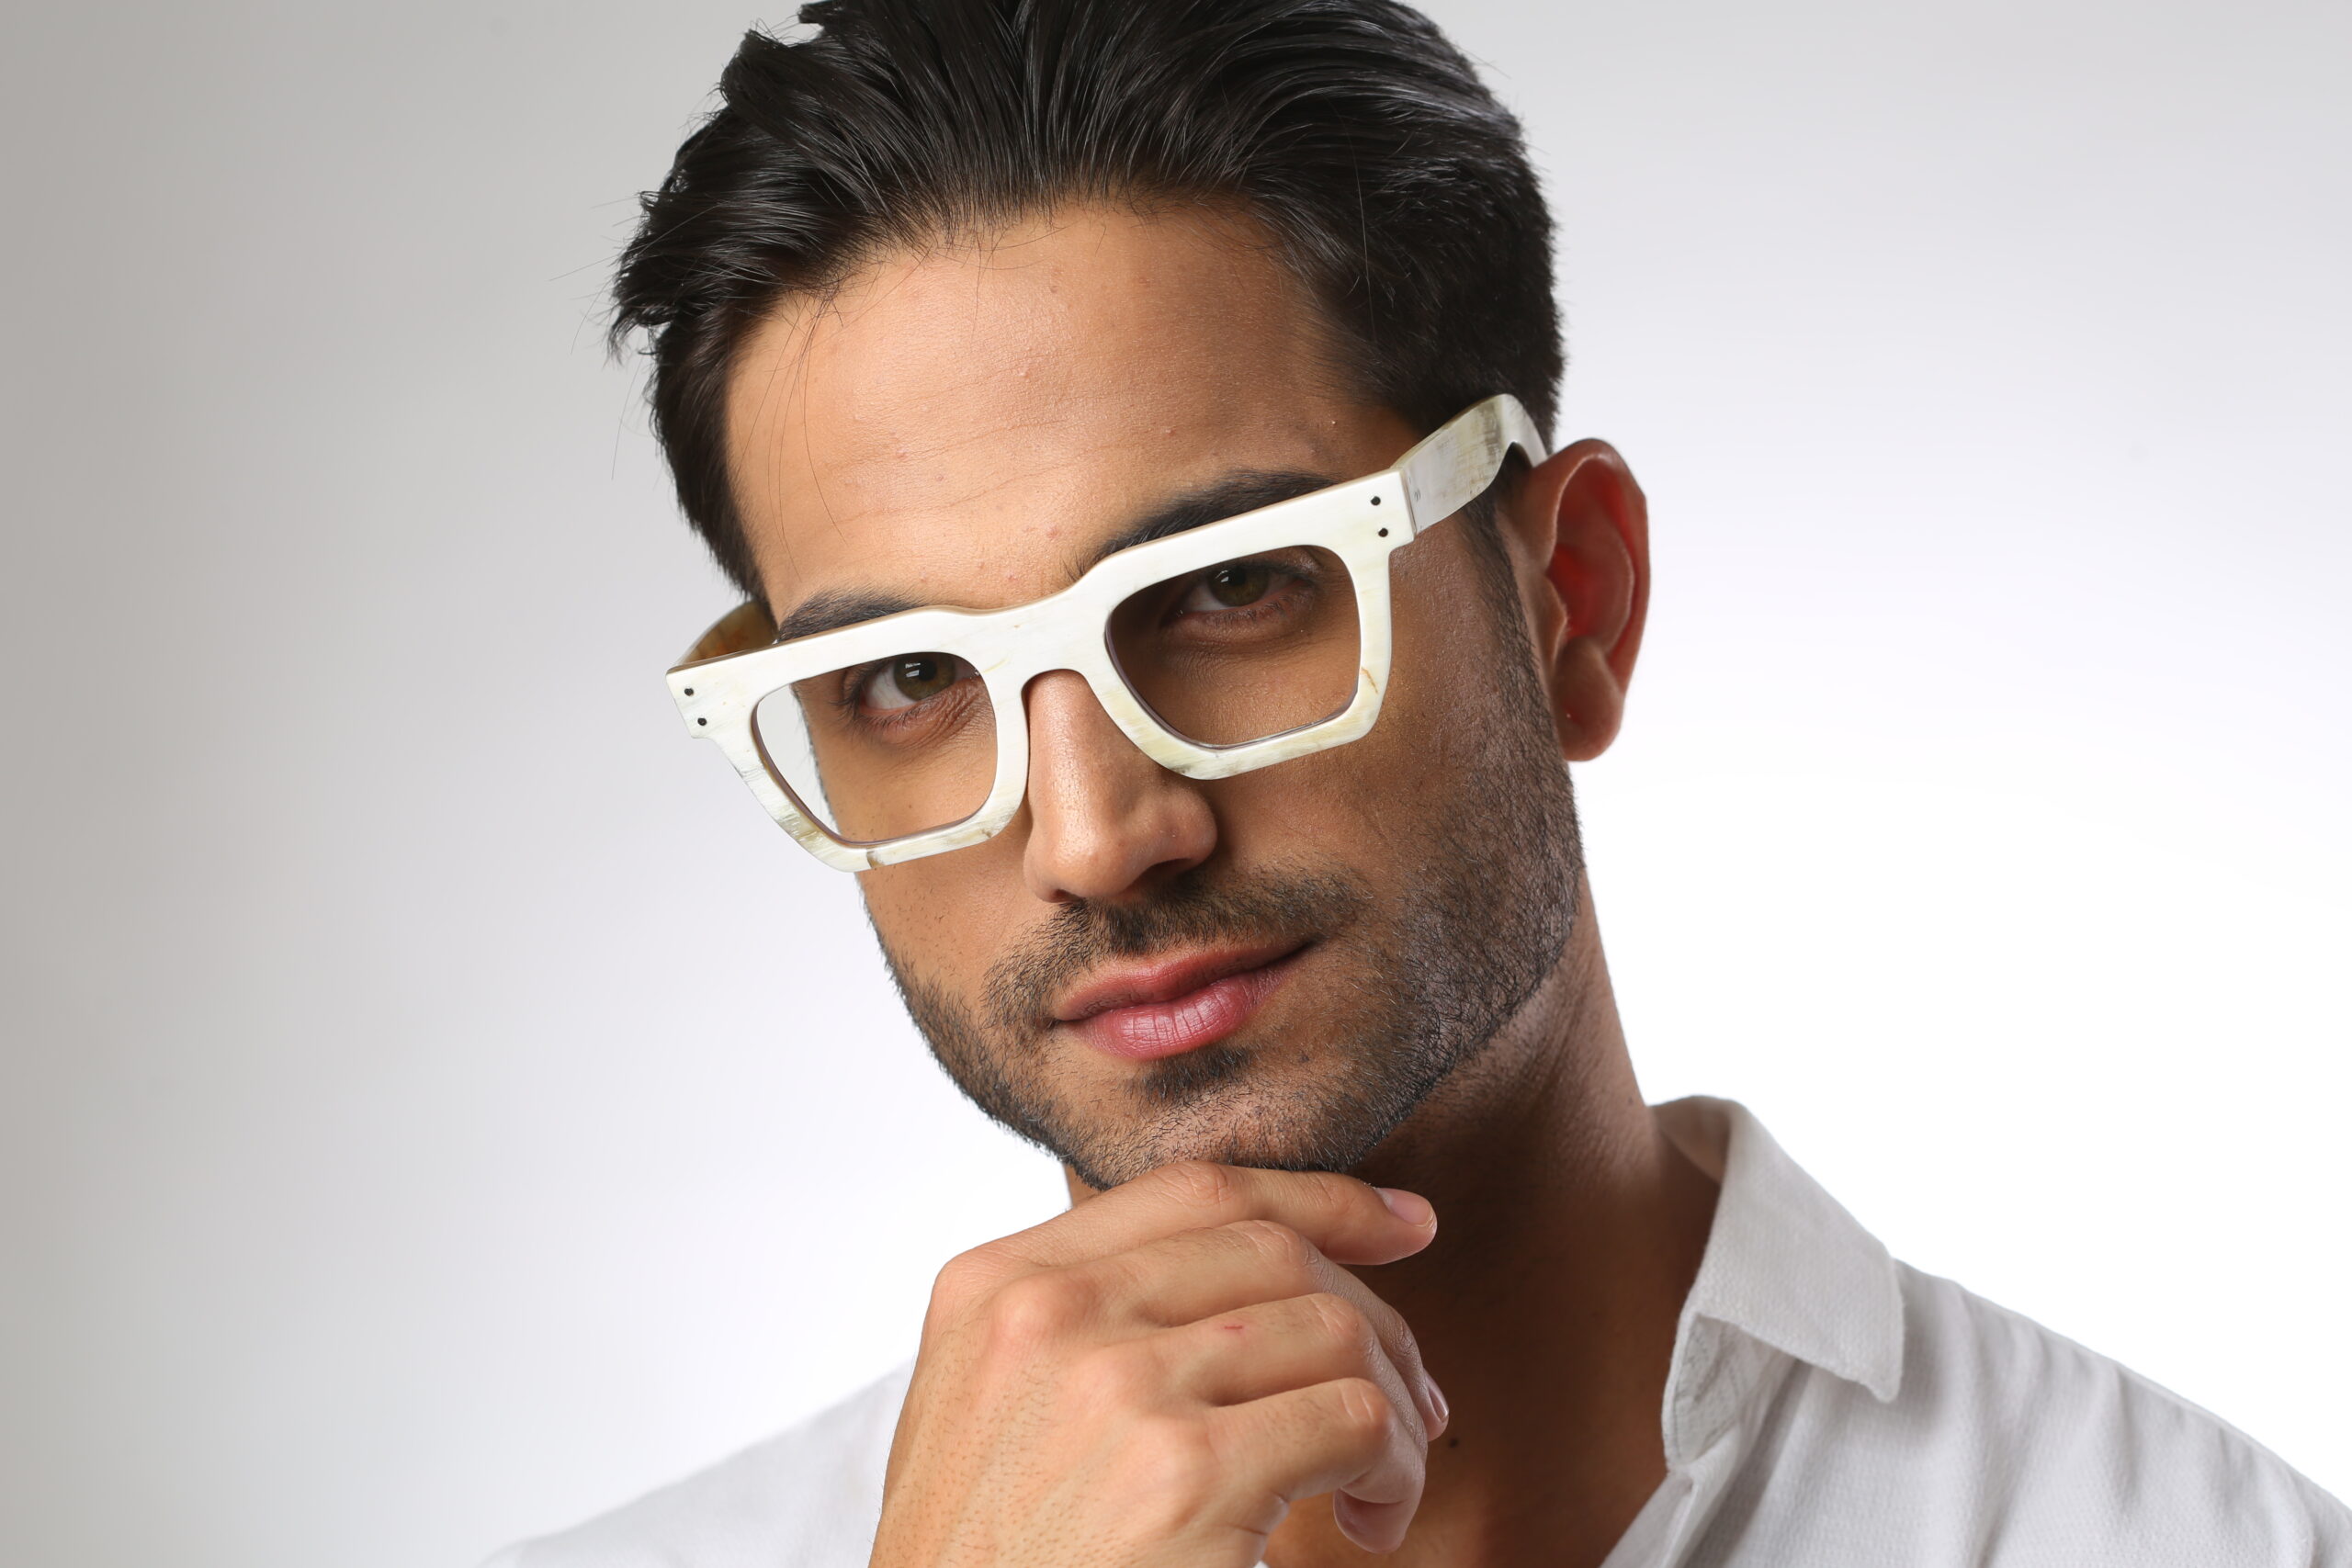 Formal Eyeglasses Guide For Men: Make Your Impression